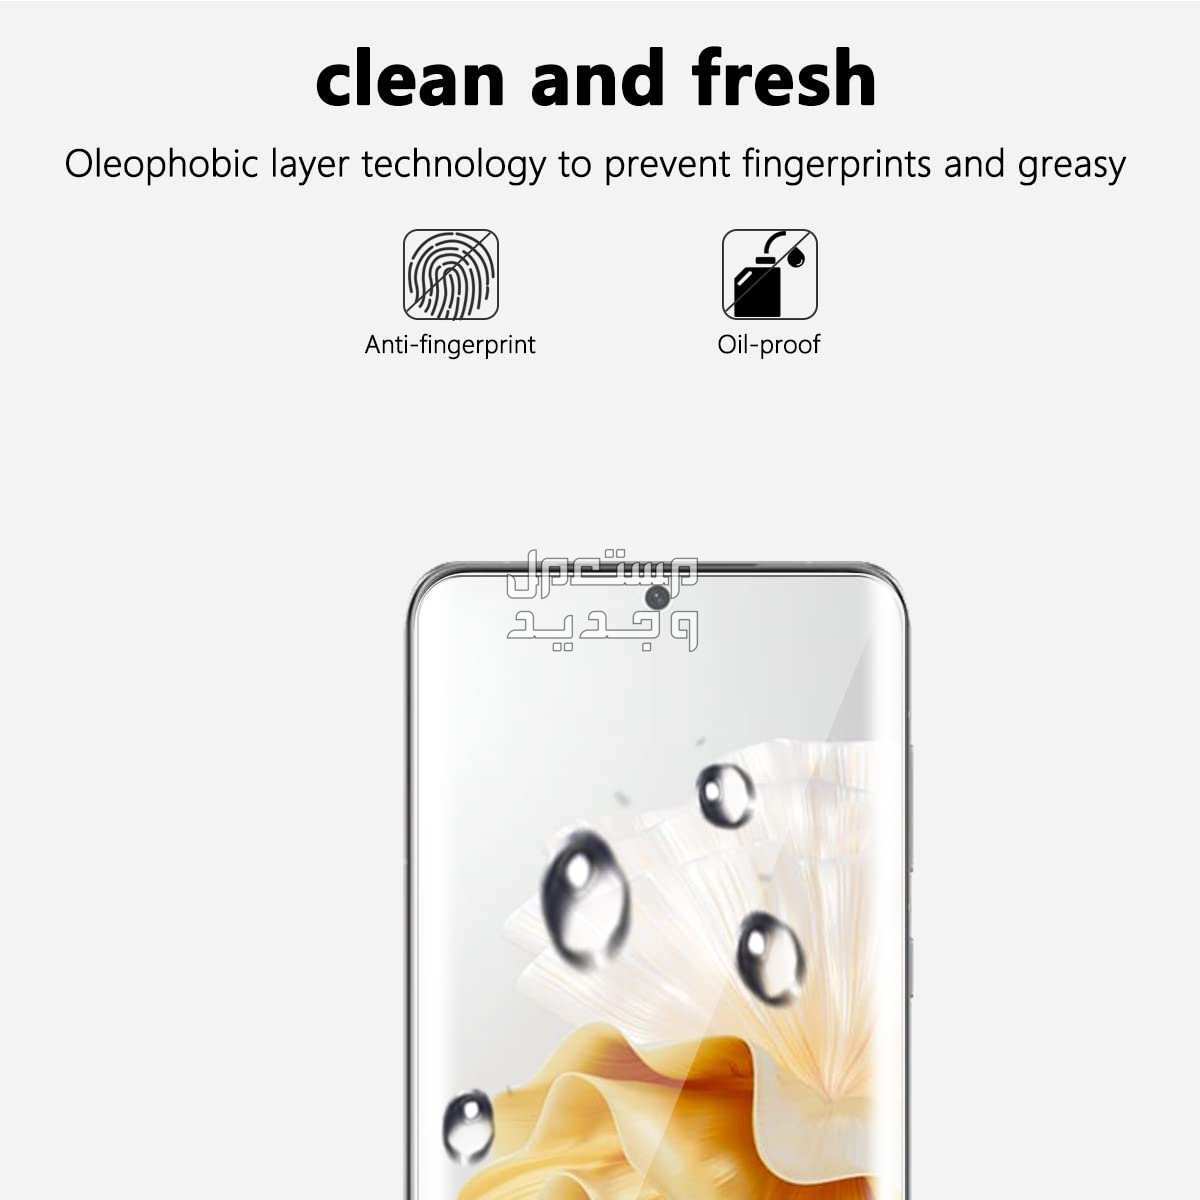 تعرف على هاتف هواوي عالي الكفاءة Huawei P60 Pro في جيبوتي Huawei P60 Pro